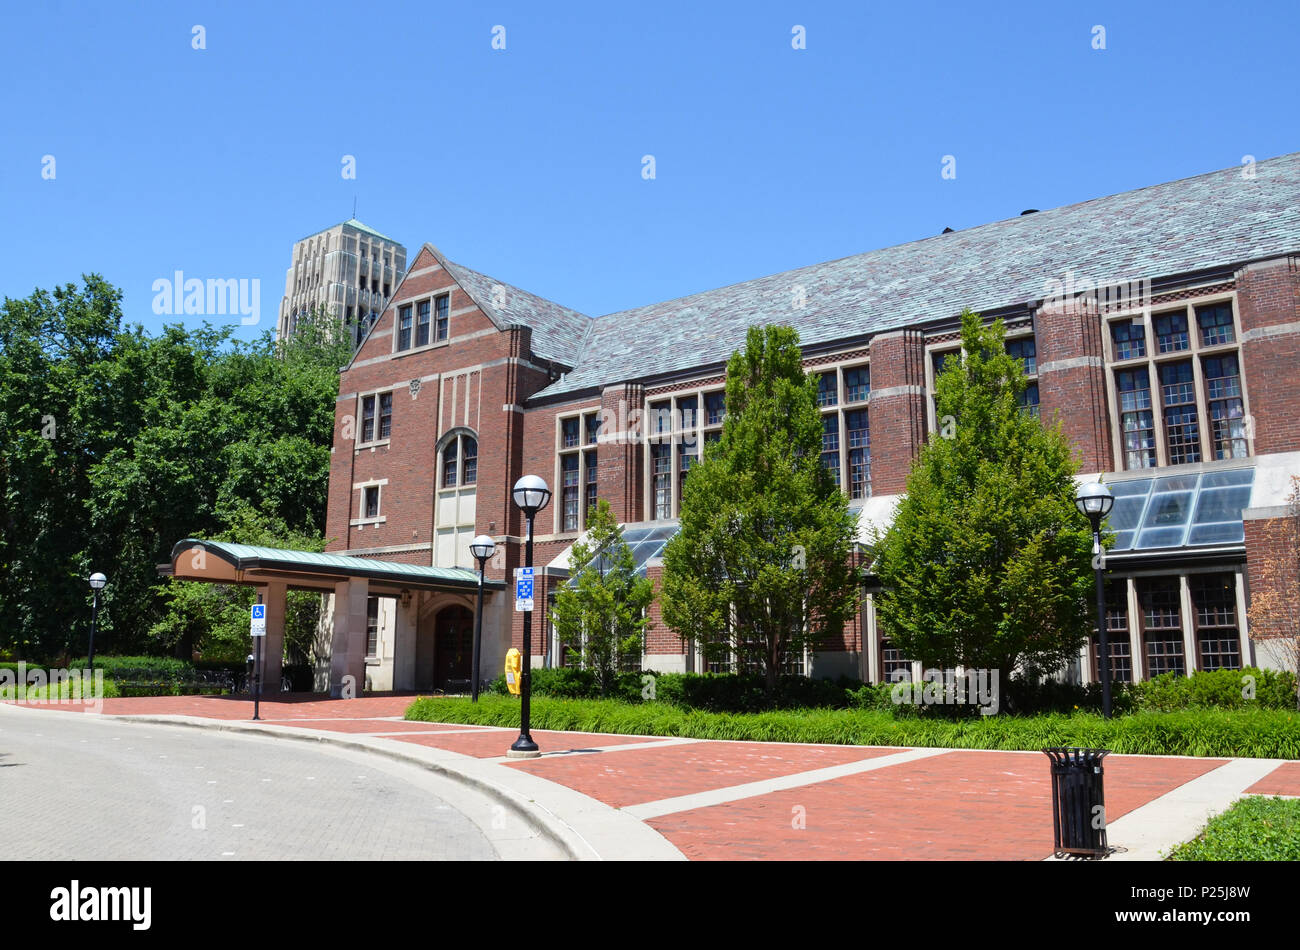 ANN Arbor, MI / USA - 2 juillet 2017 : l'Université du Michigan, dont le Michigan League bâtiment est montré ici, a célébré son 150e anniversaire en 2017. Banque D'Images